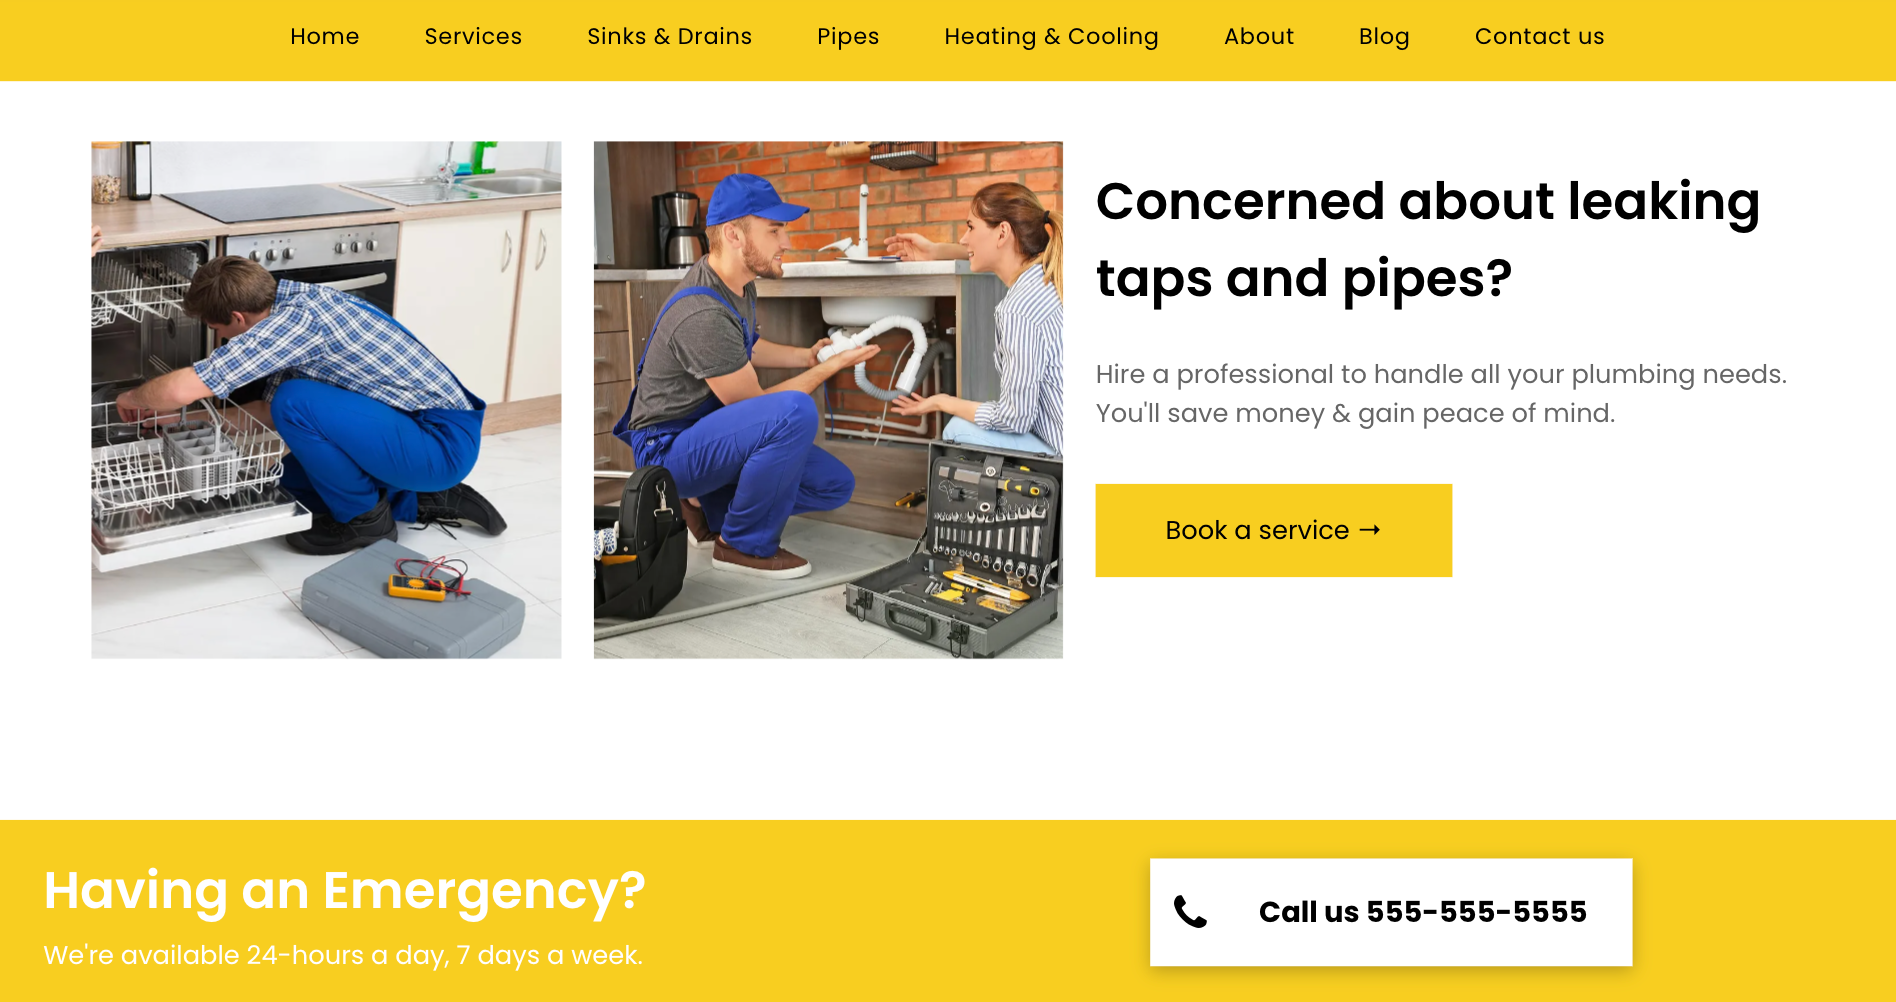 TagSonar plumbing website homepage example.